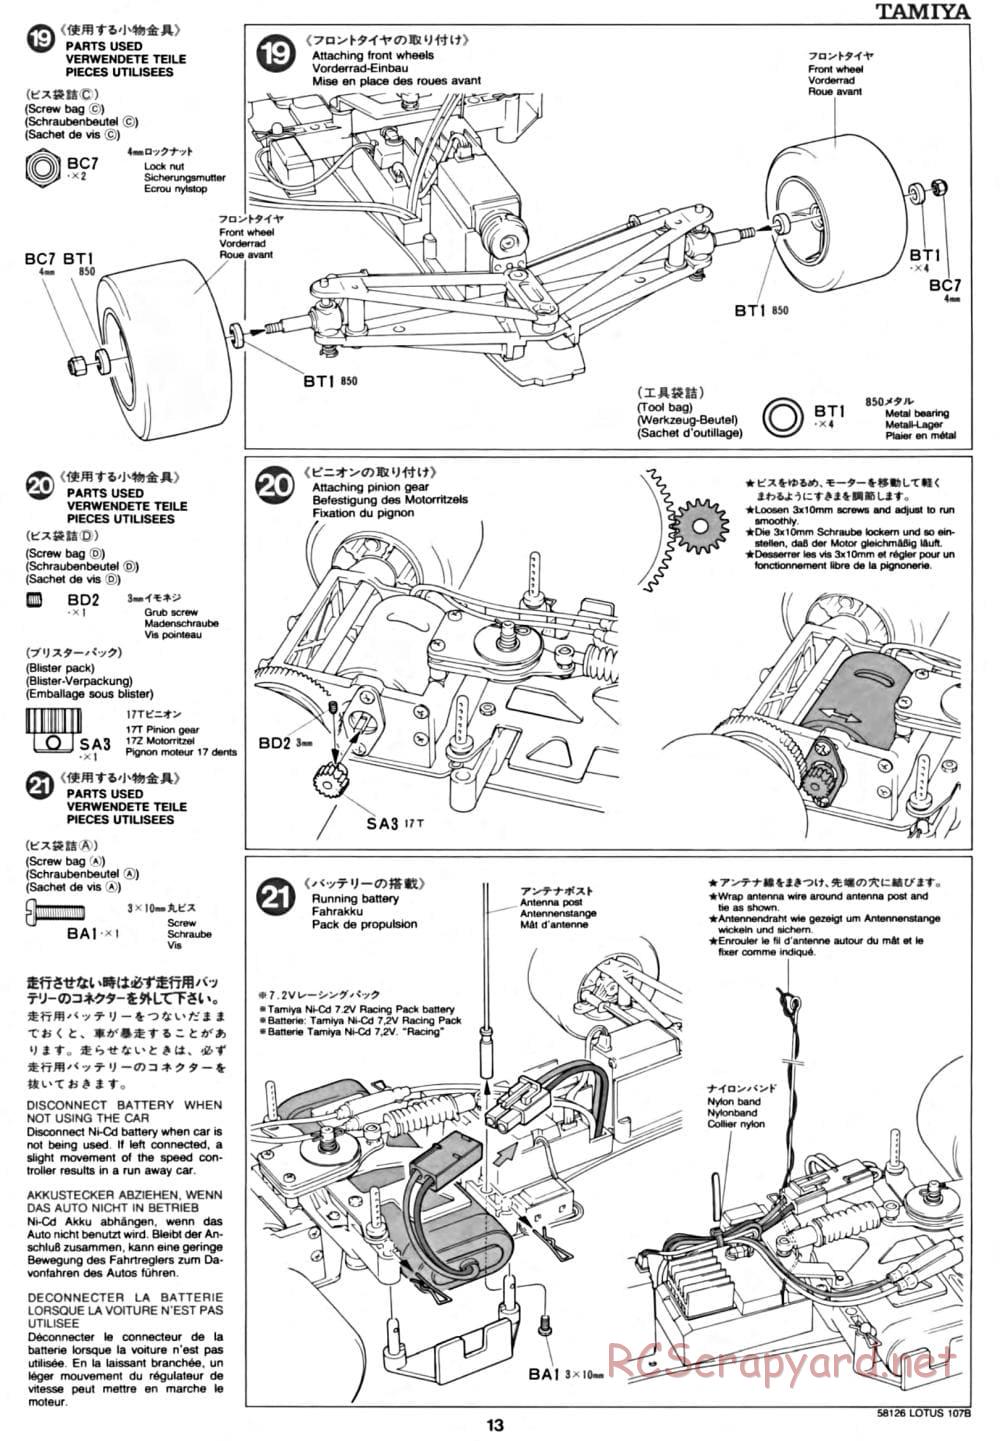 Tamiya - Lotus 107B Ford - F103 Chassis - Manual - Page 13